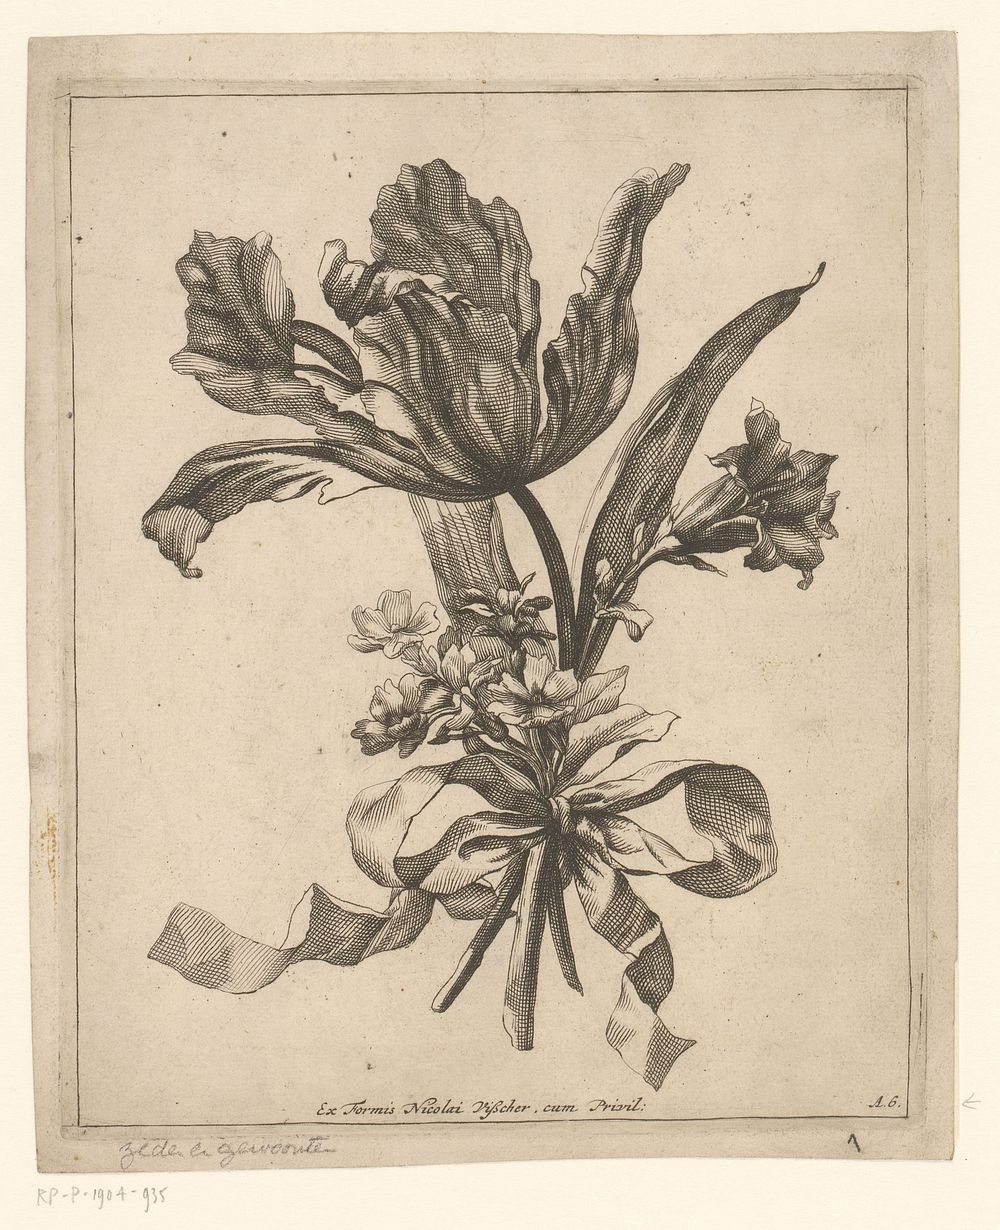 Tulp, boterbloemen en lelie in boeket (1679 - 1702) by anonymous and Nicolaes Visscher II